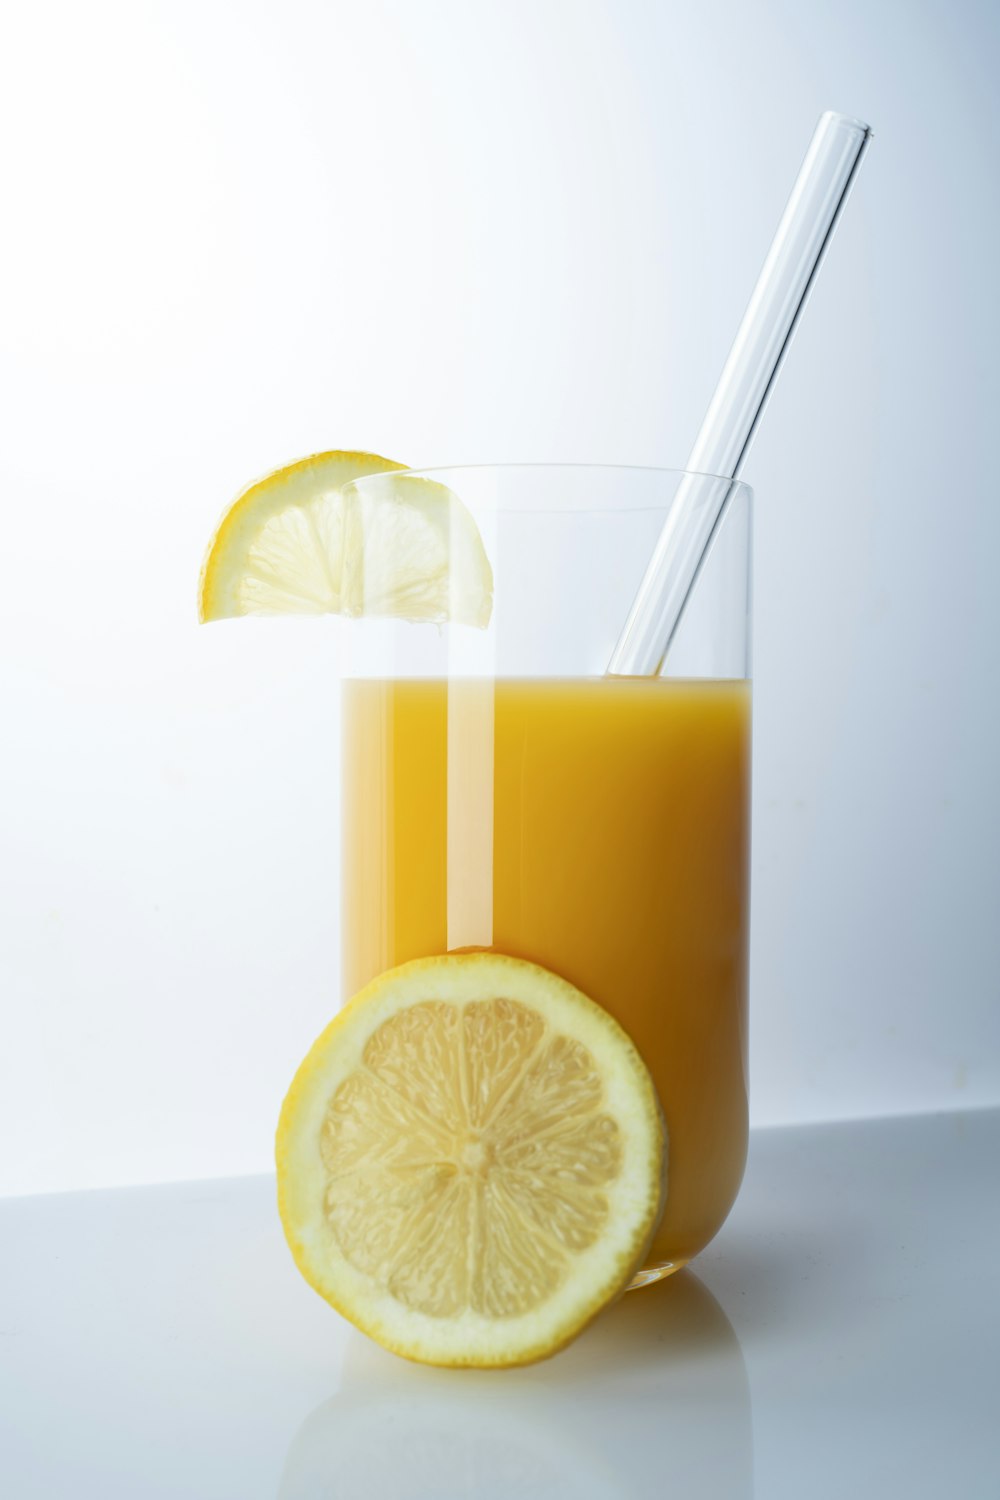 Vaso transparente con líquido amarillo y rodajas de limón